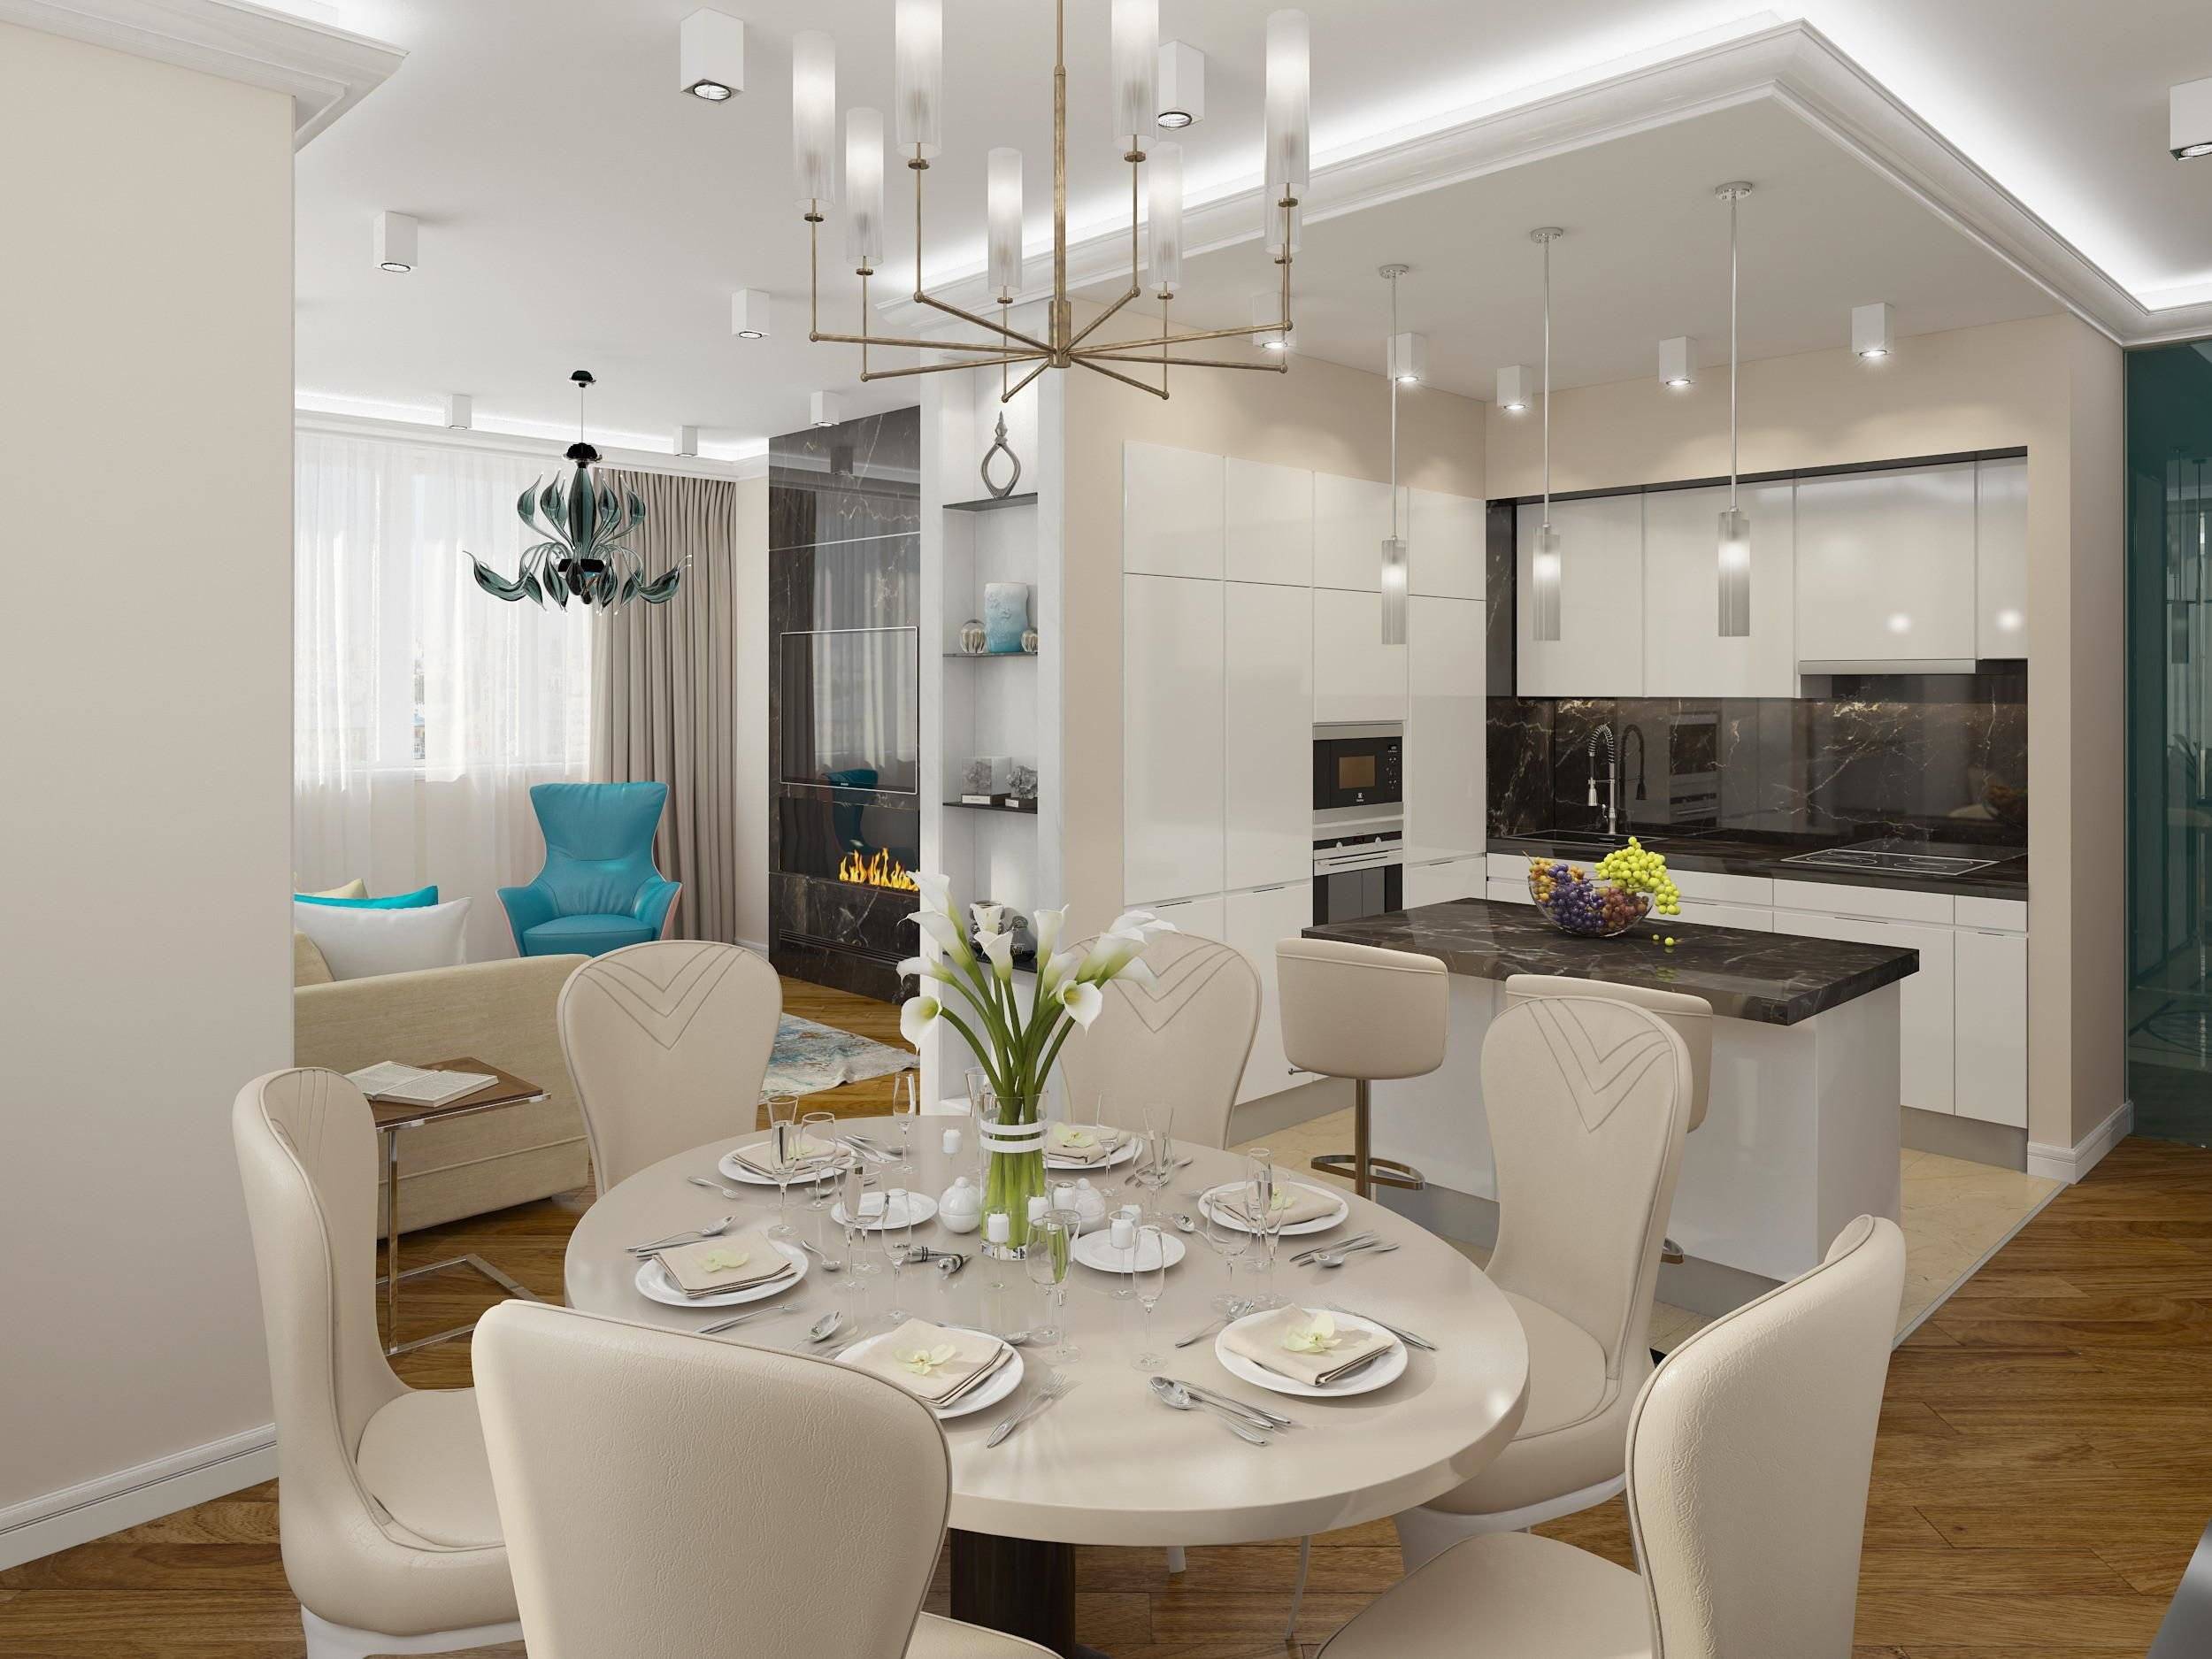 Светильники над кухонным столом, варианты и рекомендации по размещению - дизайн для дома